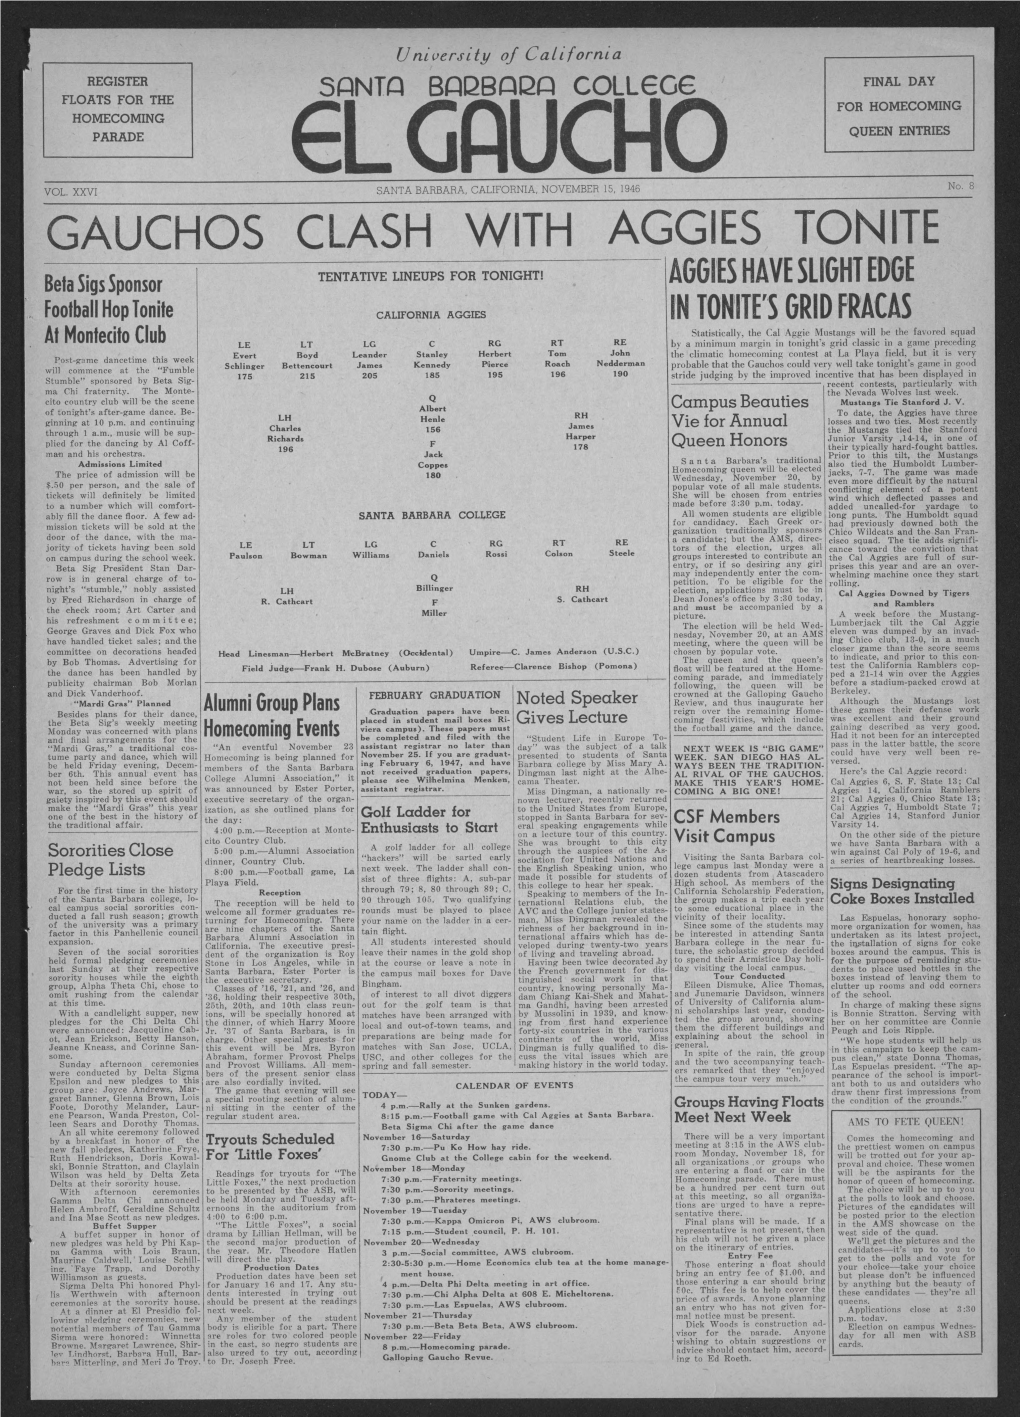 Gauchos Clash with Aggies Tonite